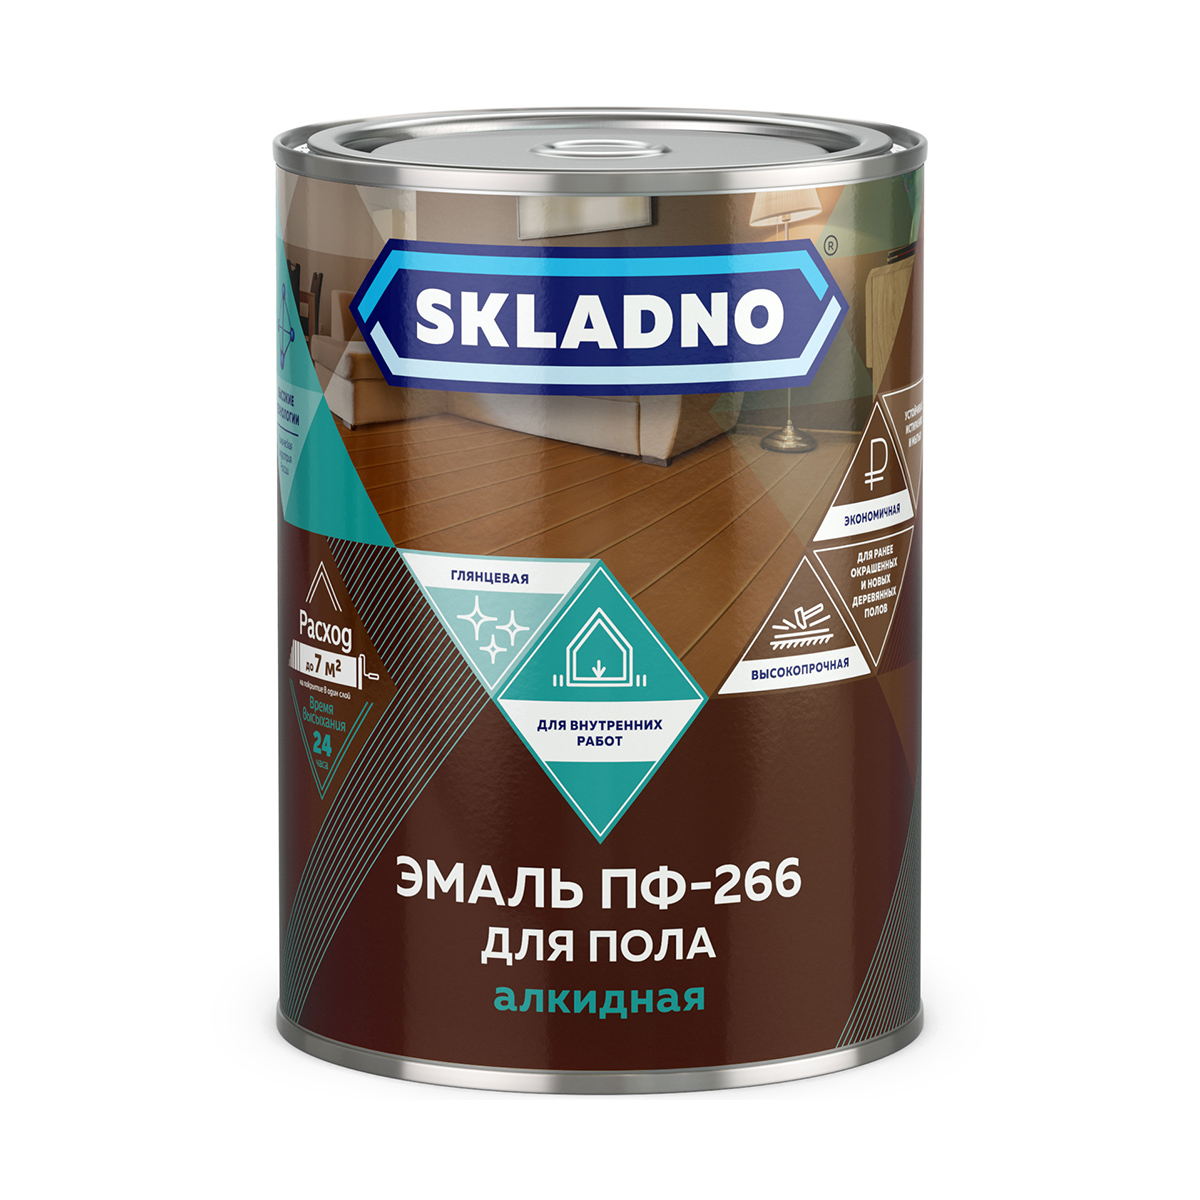 Эмаль ПФ-266 для пола Skladno, алкидная, глянцевая, 2,6 кг, золотисто-коричневая